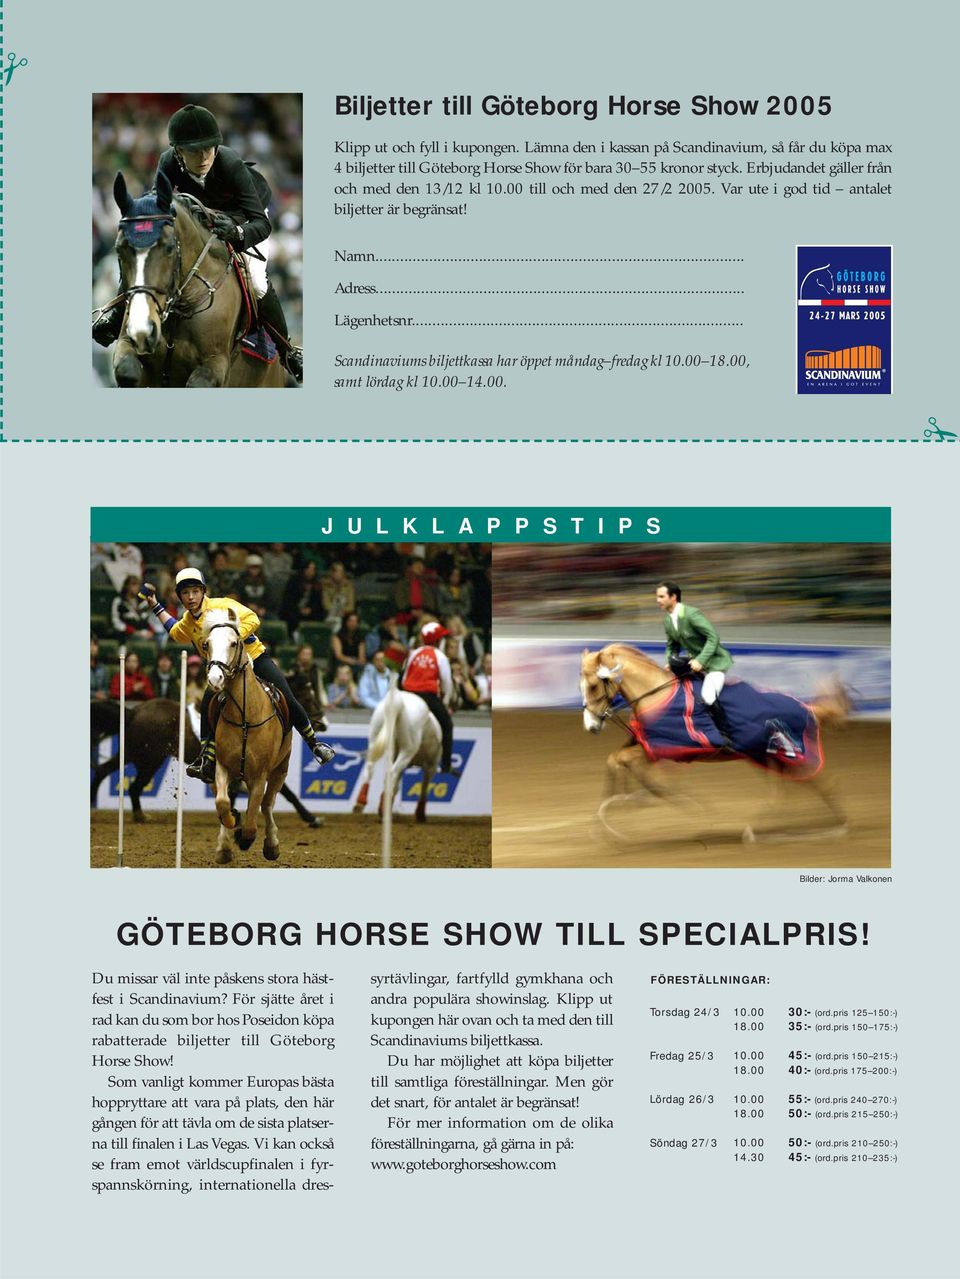 .. Scandinaviums biljettkassa har öppet måndag fredag kl 10.00 18.00, samt lördag kl 10.00 14.00. J U L K L A P P S T I P S Bilder: Jorma Valkonen GÖTEBORG HORSE SHOW TILL SPECIALPRIS!